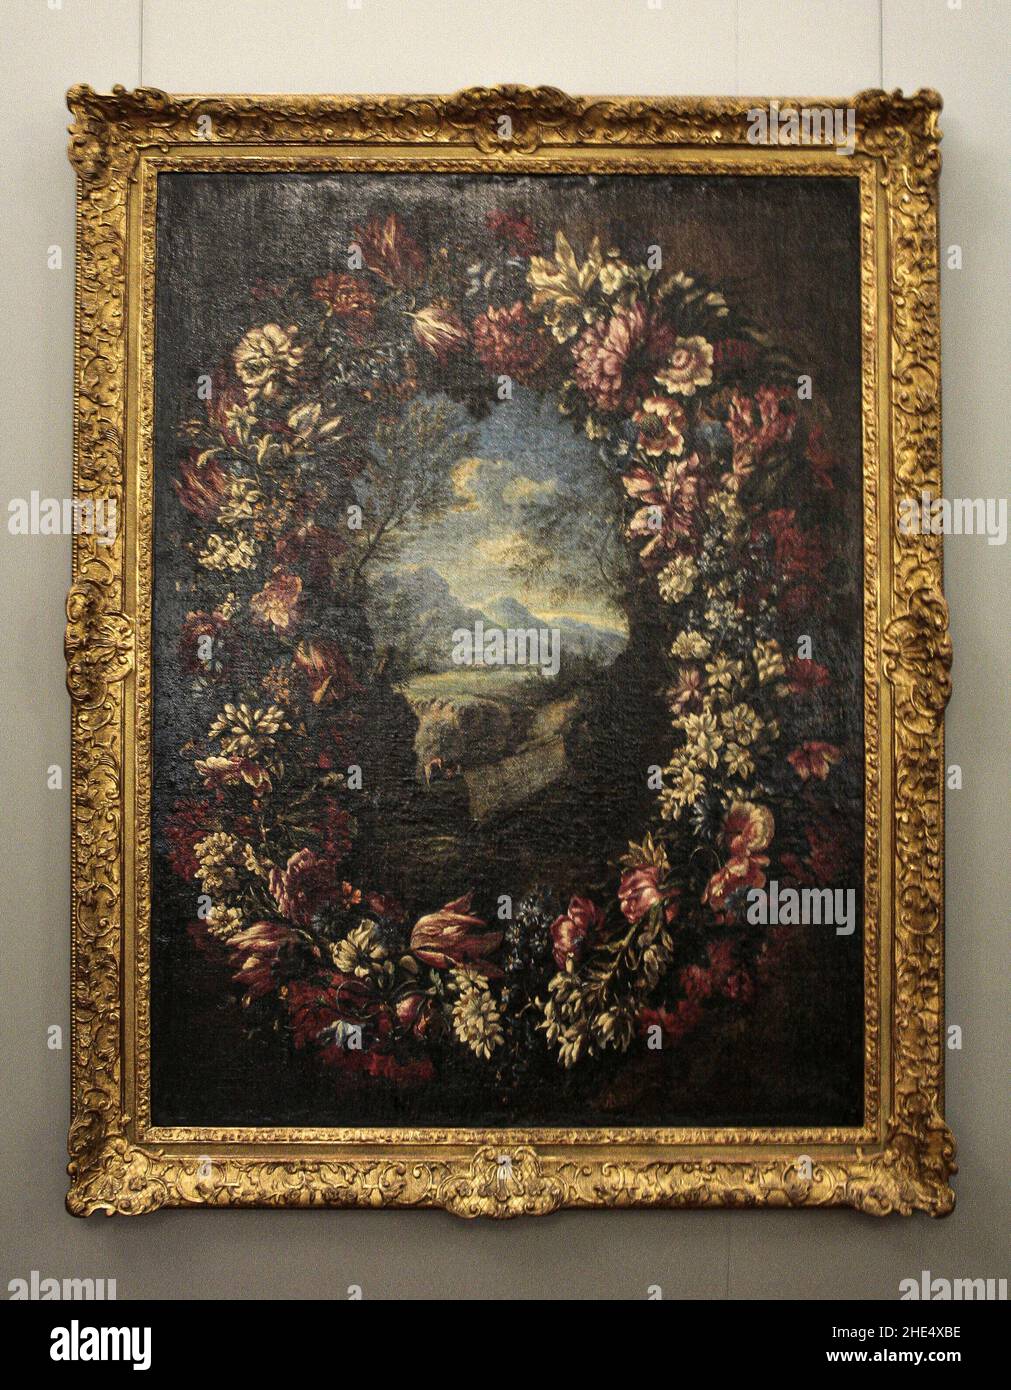 Zagreb, Kroatien, Republika Hrvatska, Europa. Mimara Museum (Muzej Mimara). Abraham Brueghel (1631-1697), Blumengirlande mit Landschaft, um 1660-1670, Öl auf Leinwand. Stockfoto